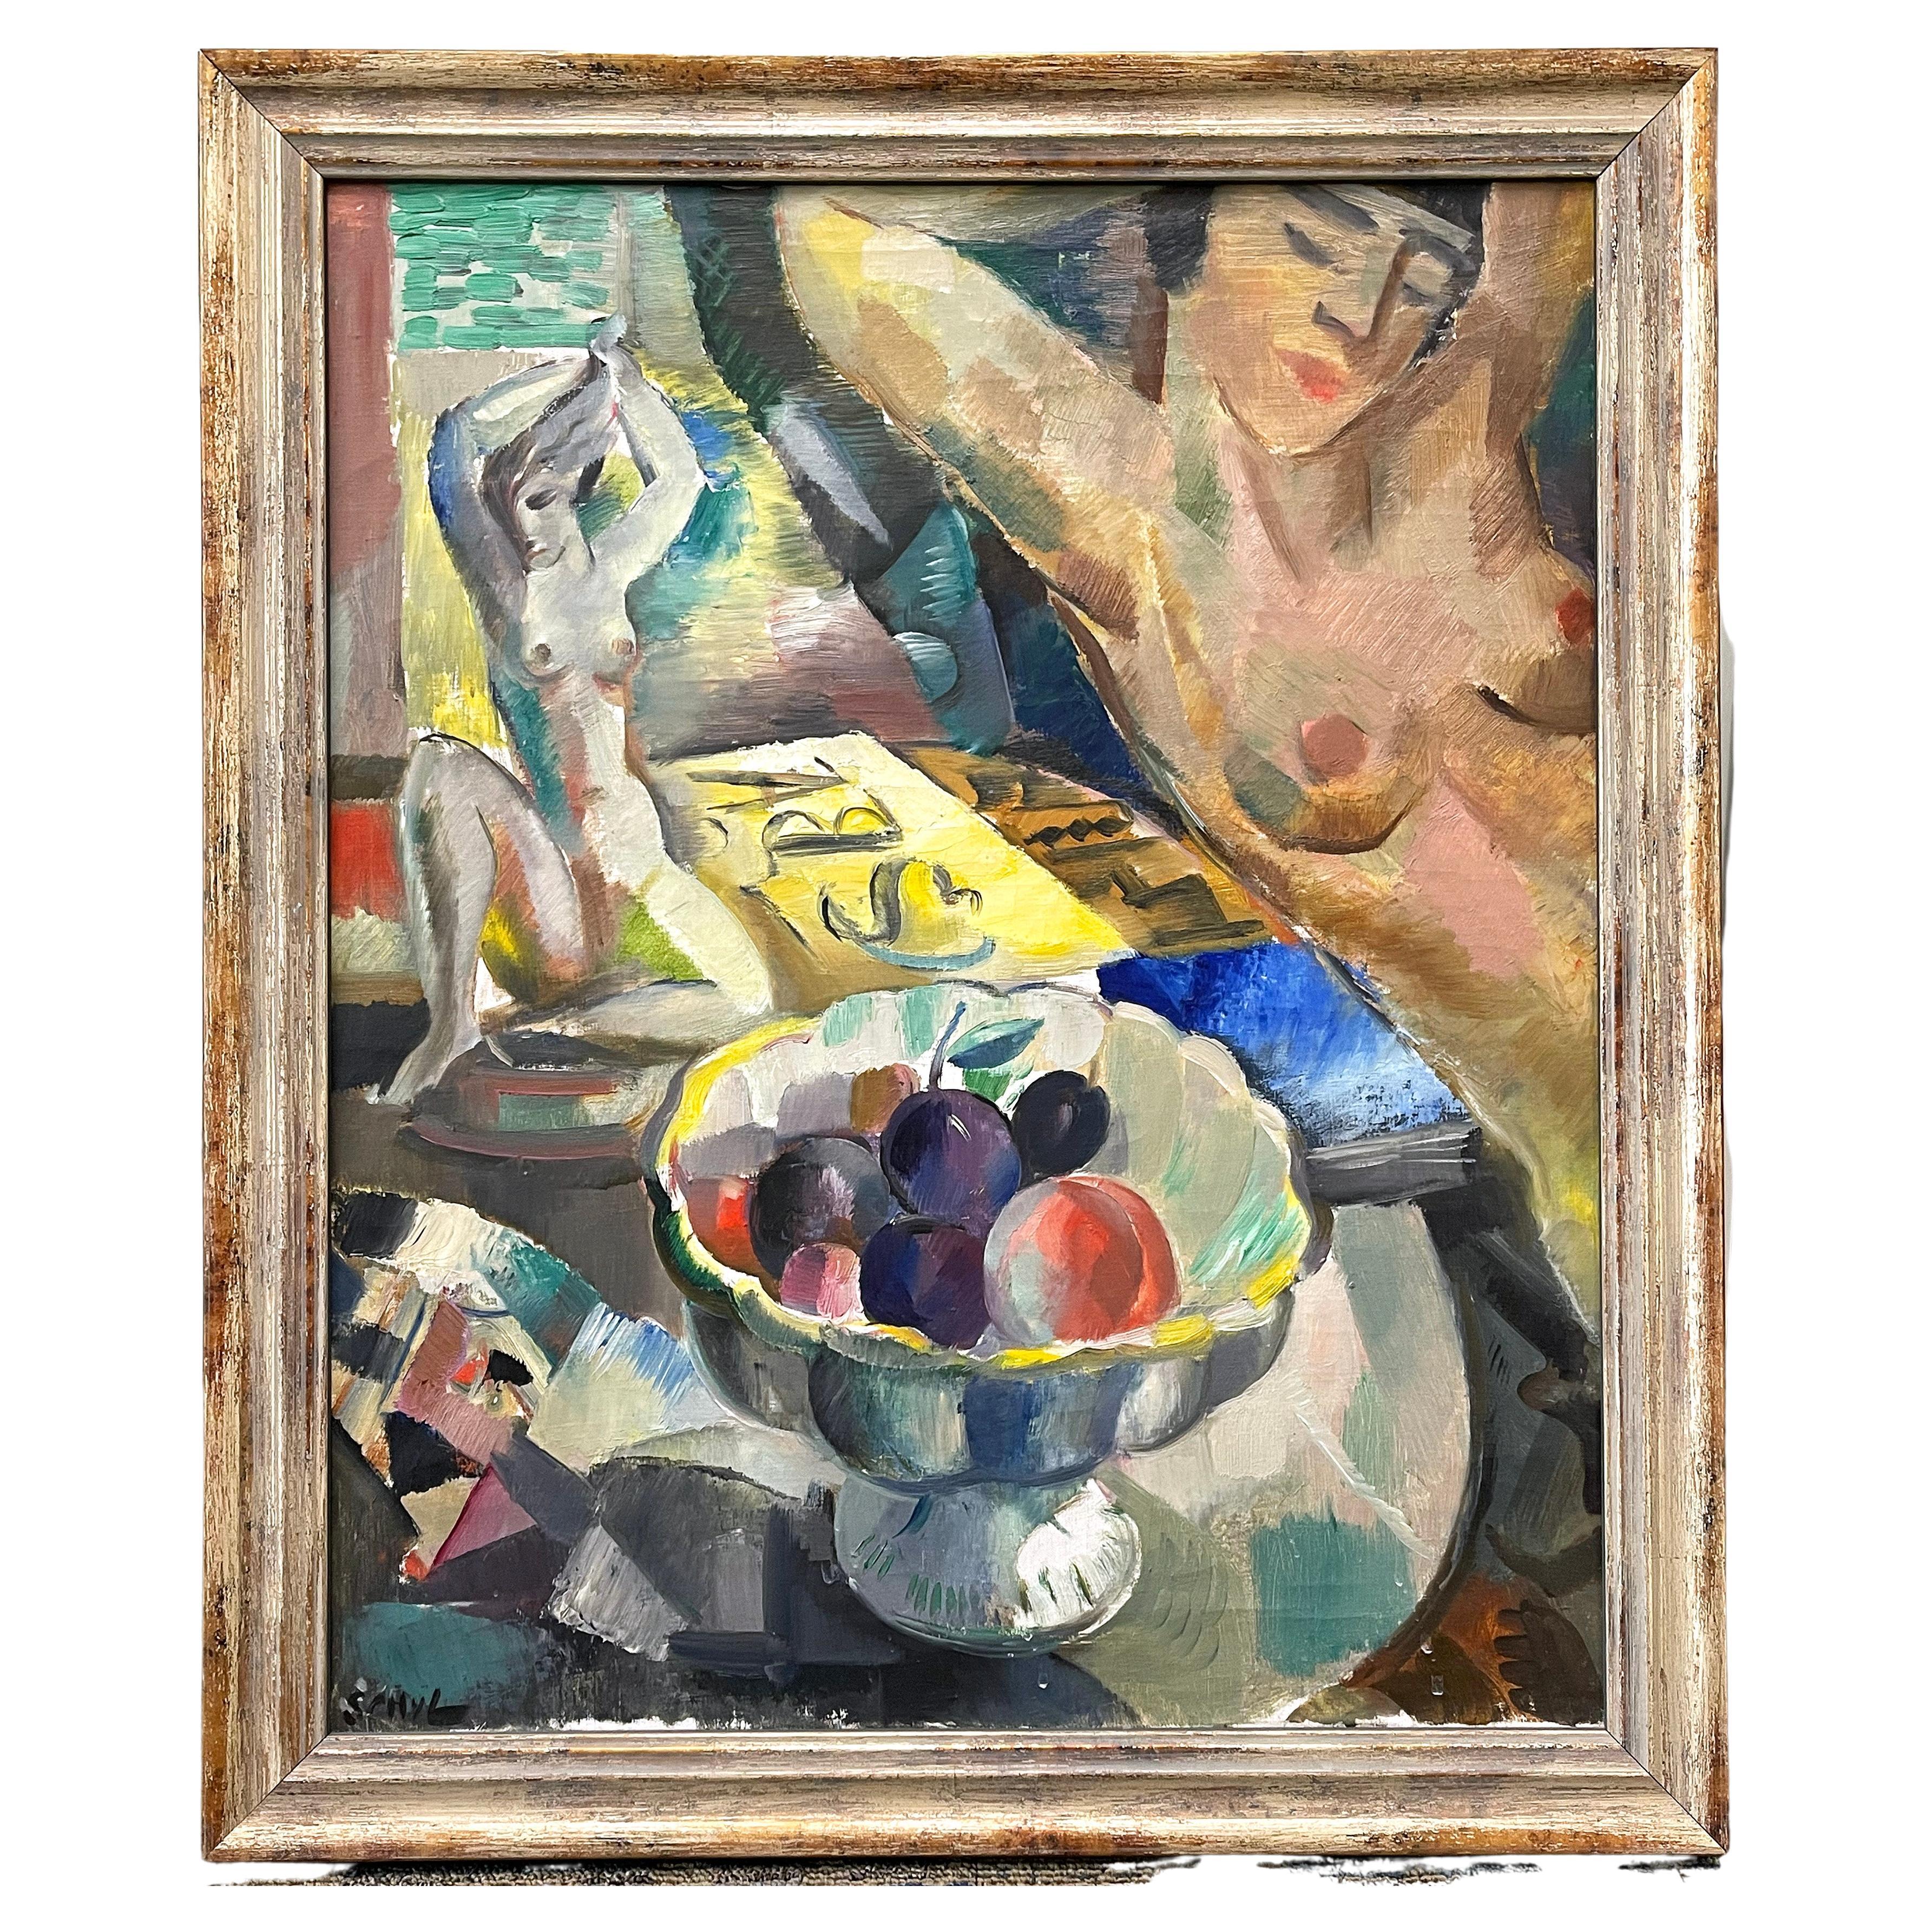 „Zwei Akte und Obstschale“, meisterhaftes, kubistisches, vom Kubismus beeinflusstes Ölgemälde im Art déco-Stil